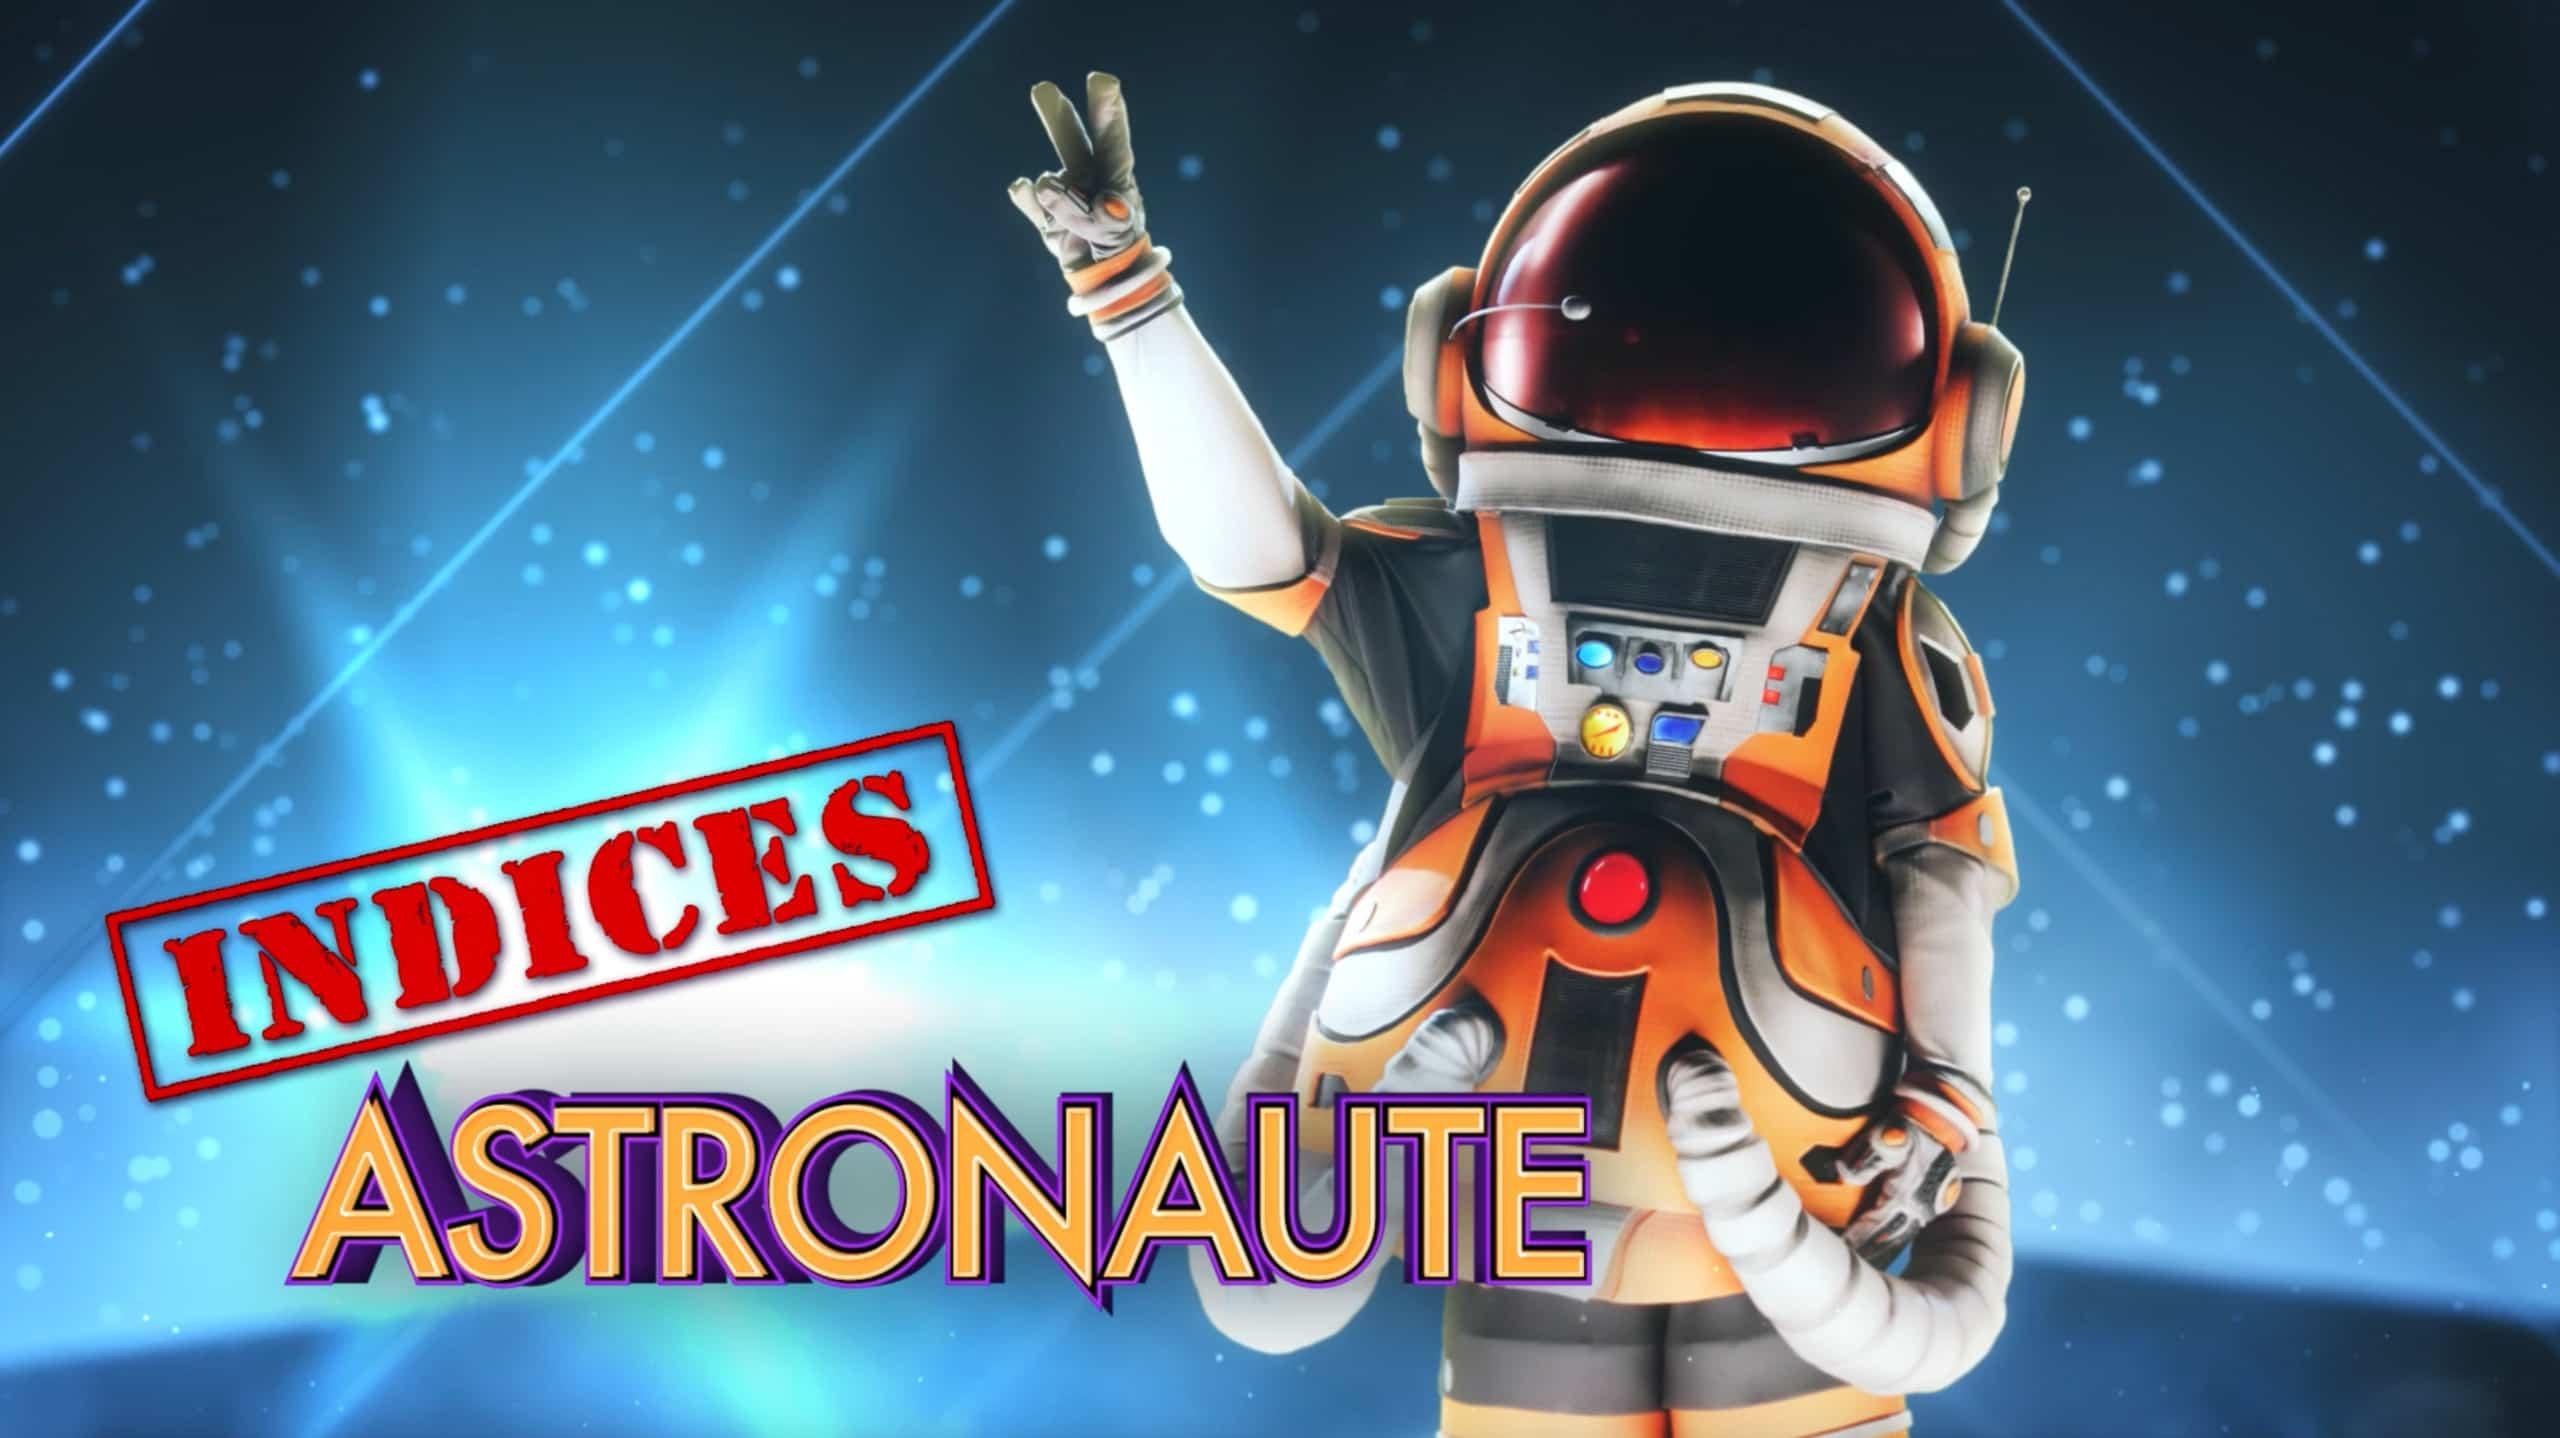 Astronaute - Indices 2